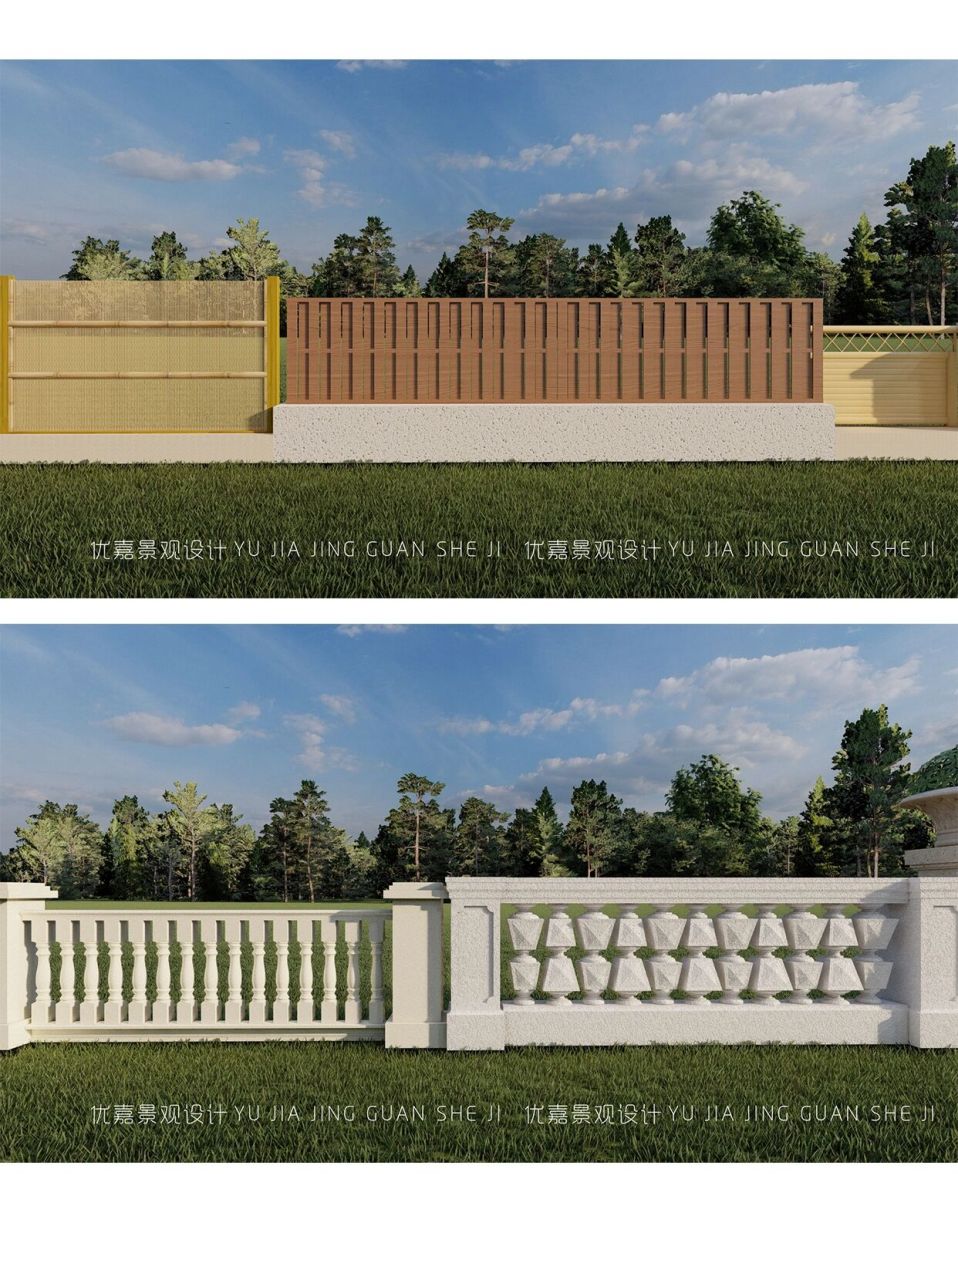 多种庭院93围栏围墙效果图设计赏析(上) 96带给你无限的灵感和